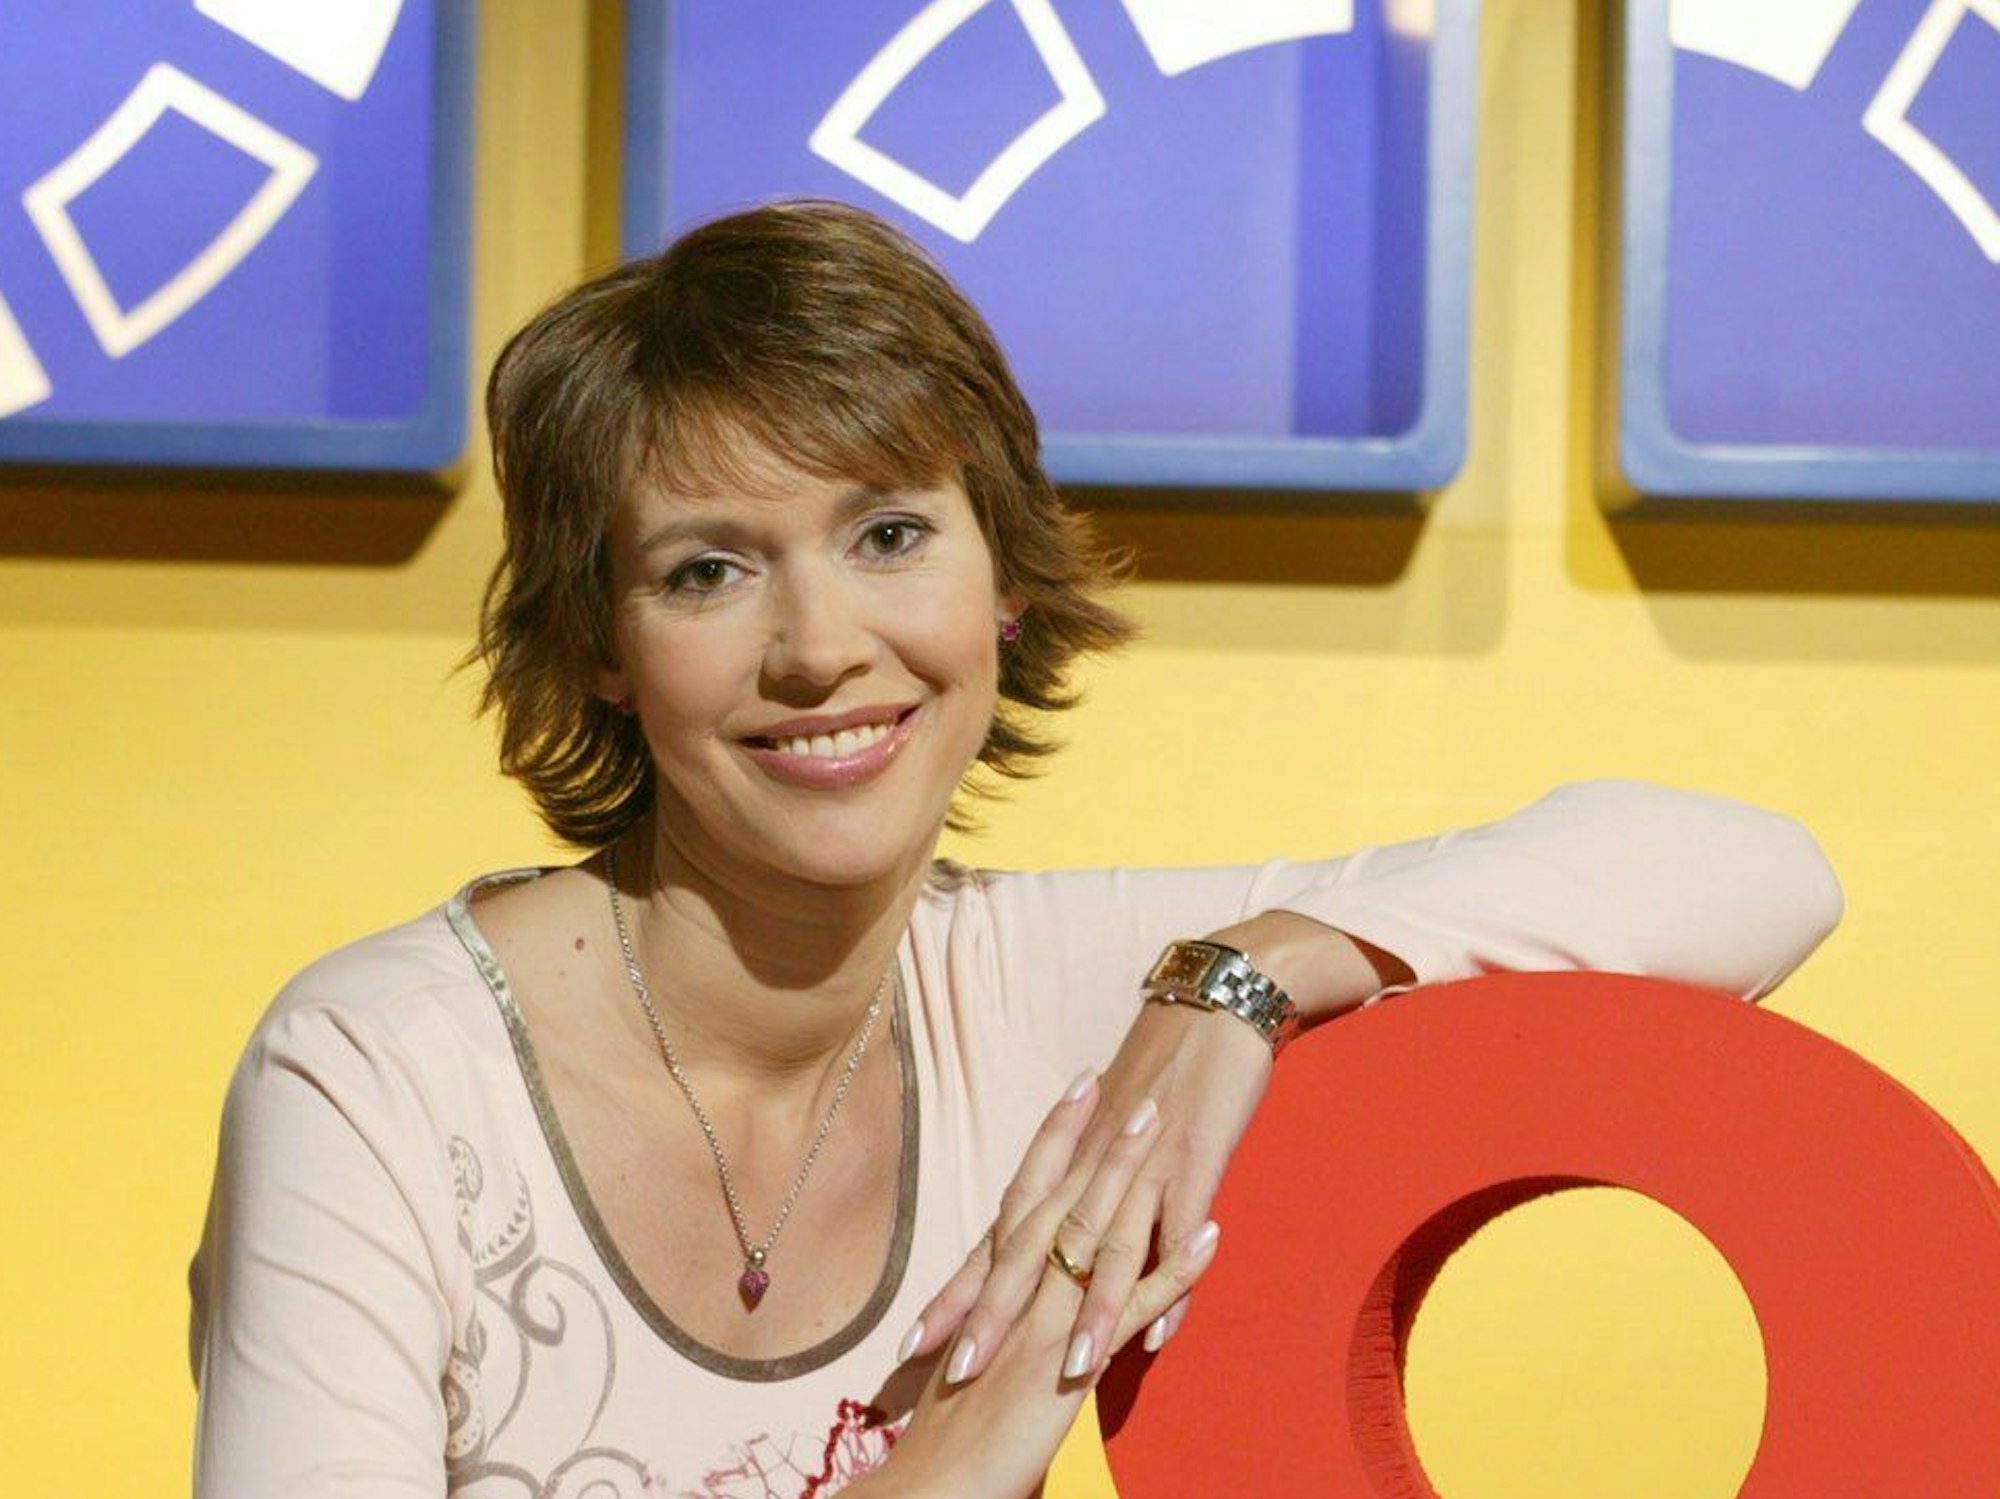 Silvia Laubenbacher moderierte das Mittagsmagazin „SAM“ beim Sender ProSieben.